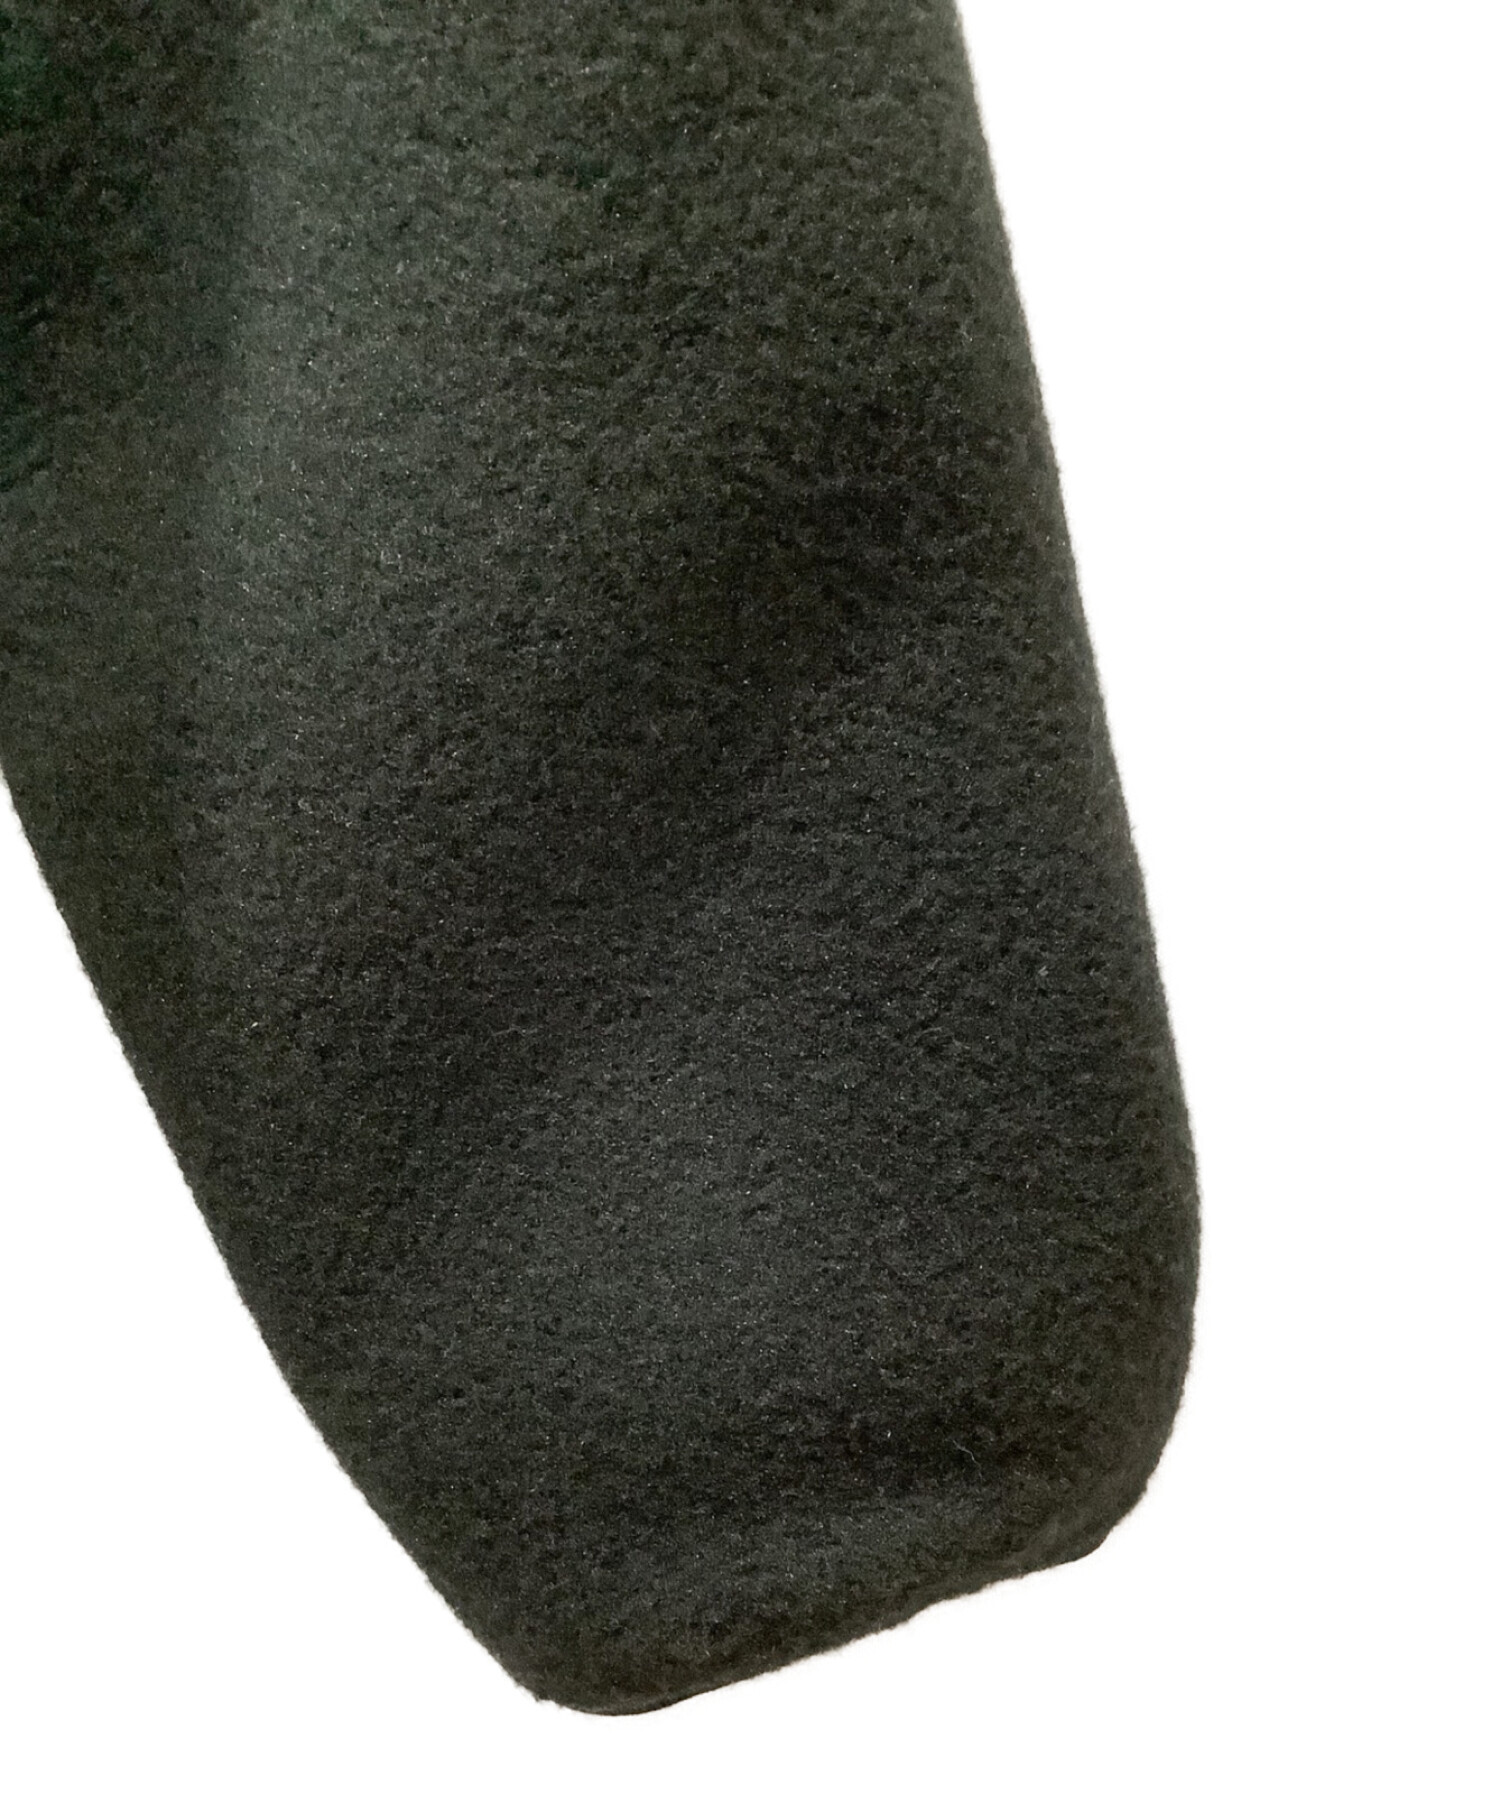 THE NORTH FACE (ザ ノース フェイス) ノベルティーデナリジャケット ブラック×カモ サイズ:S 未使用品